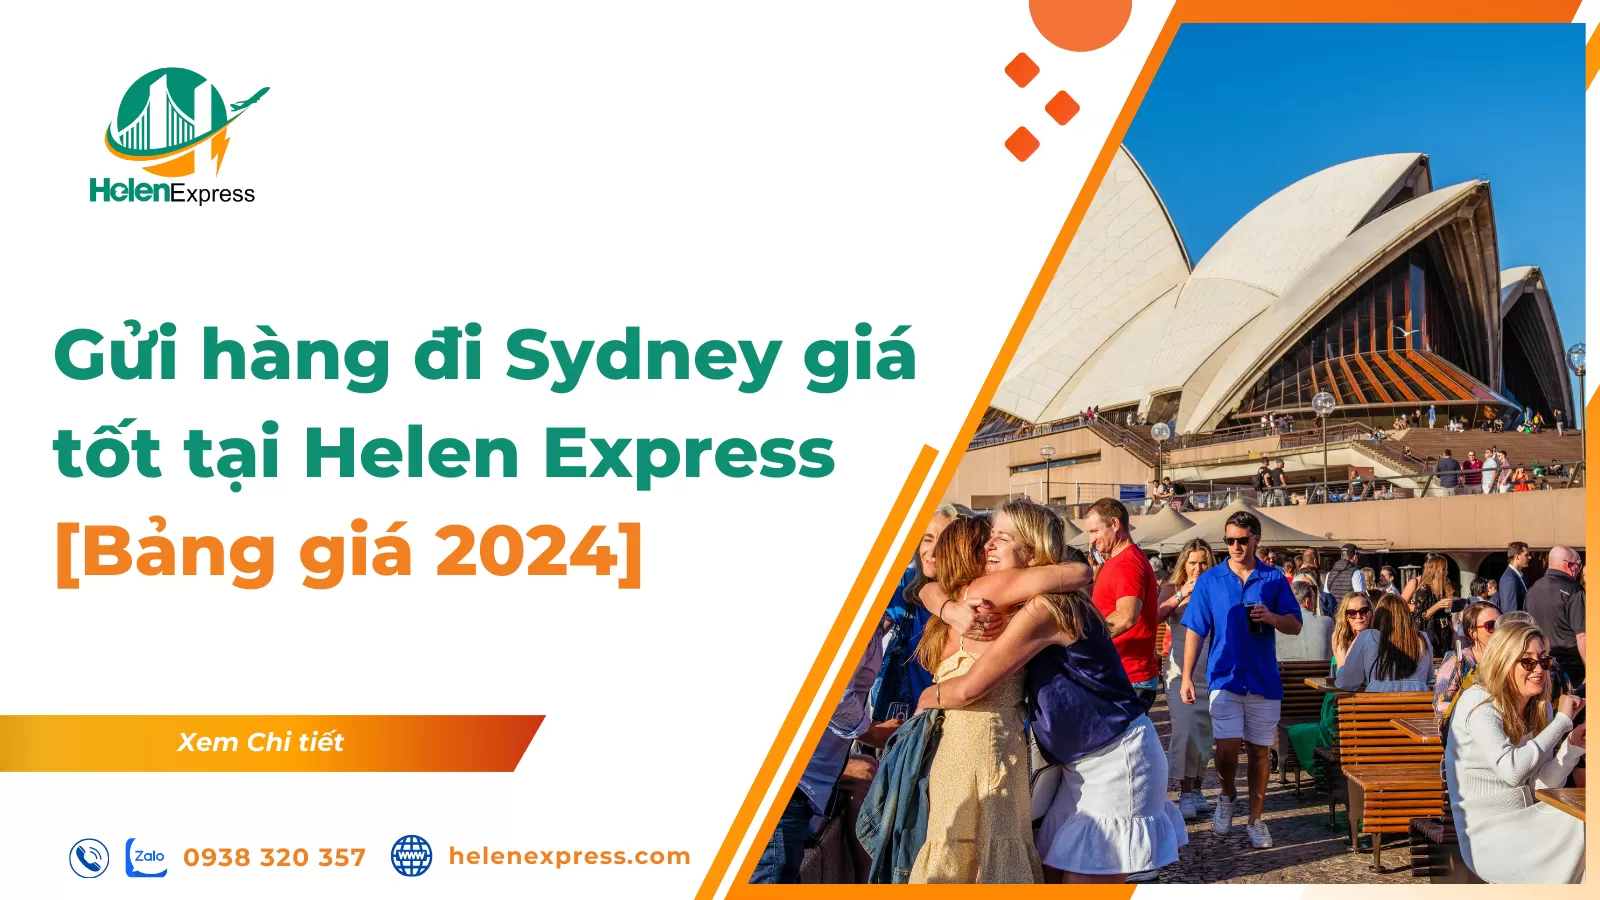 Gửi hàng đi Sydney giá tốt tại Helen Express [Bảng giá 2024]